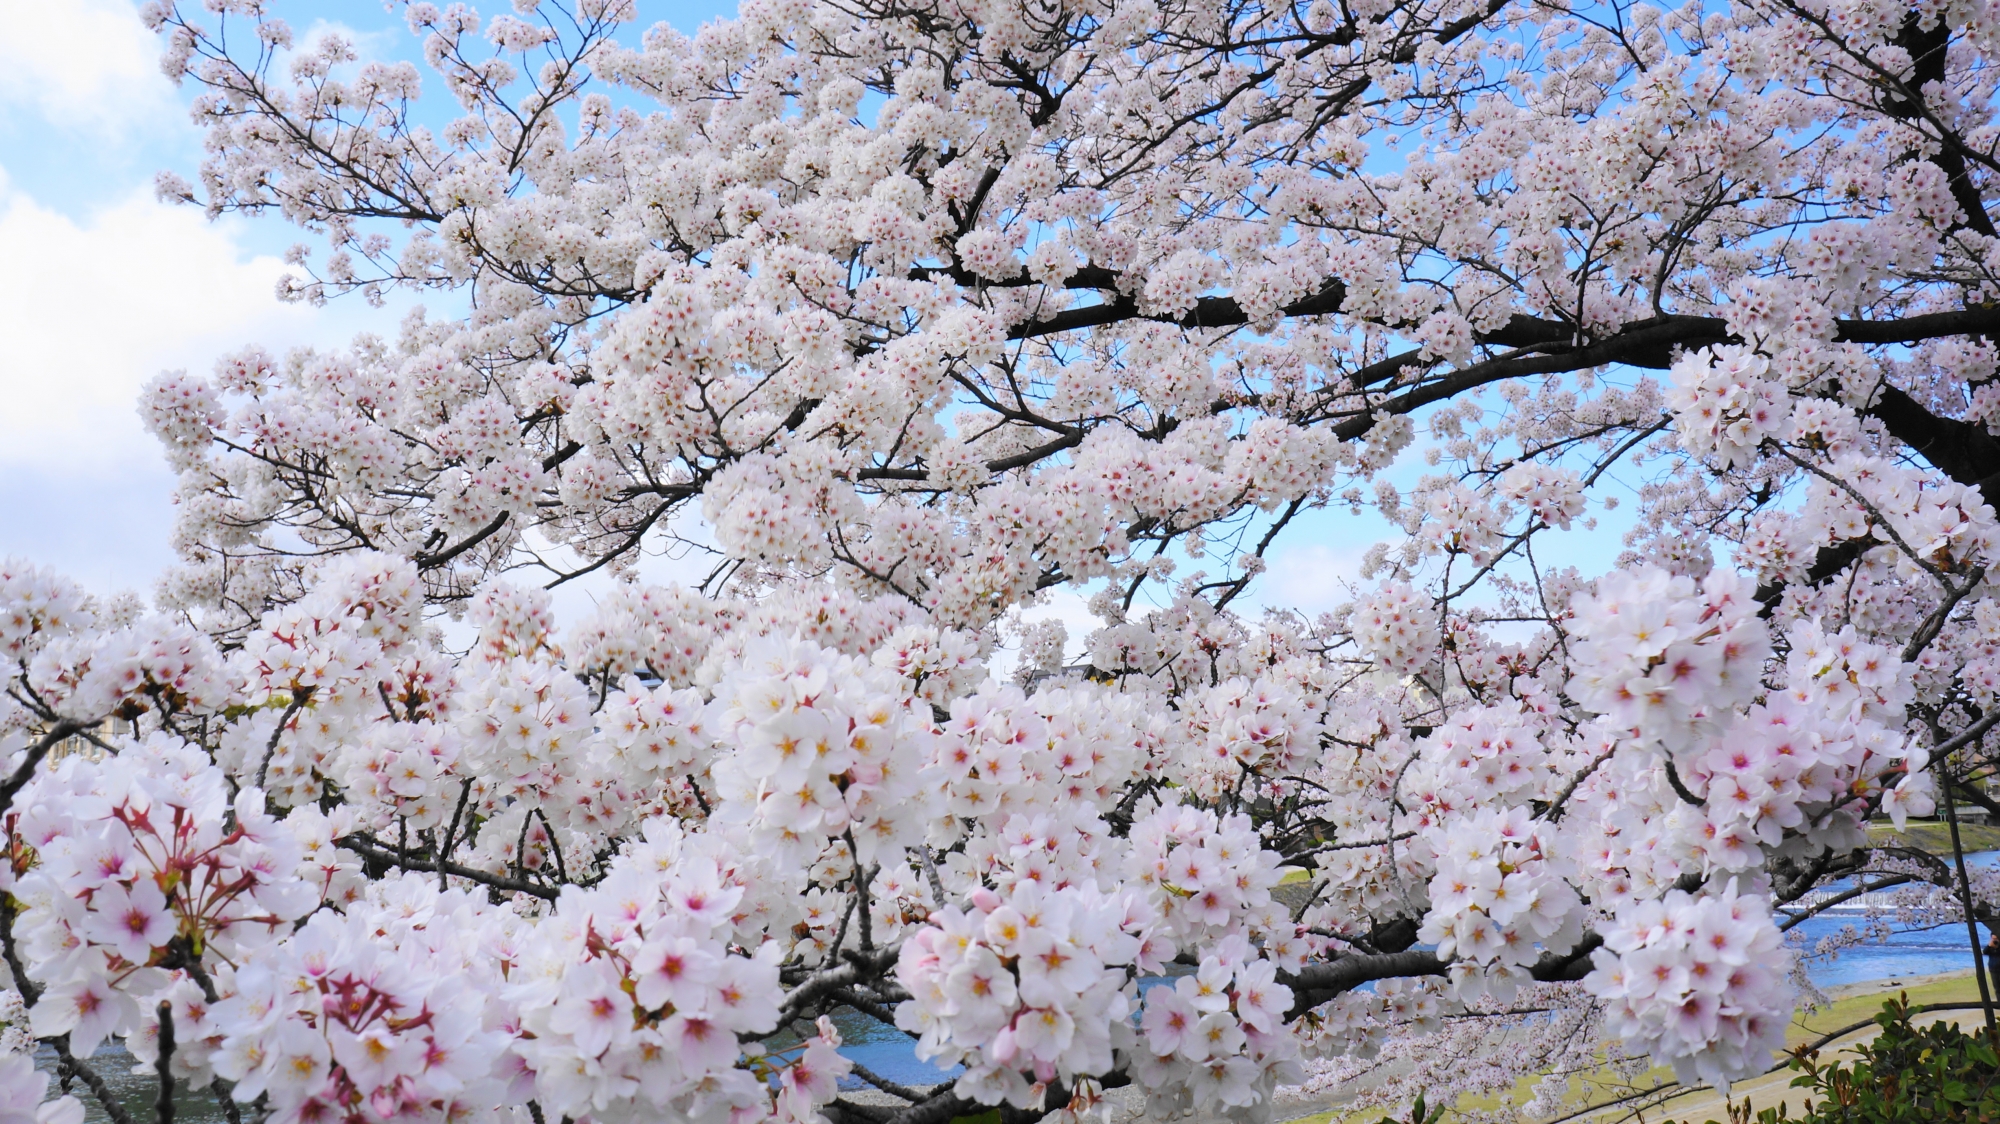 花密度が濃く見事な咲きっぷりのモコモコした桜の花